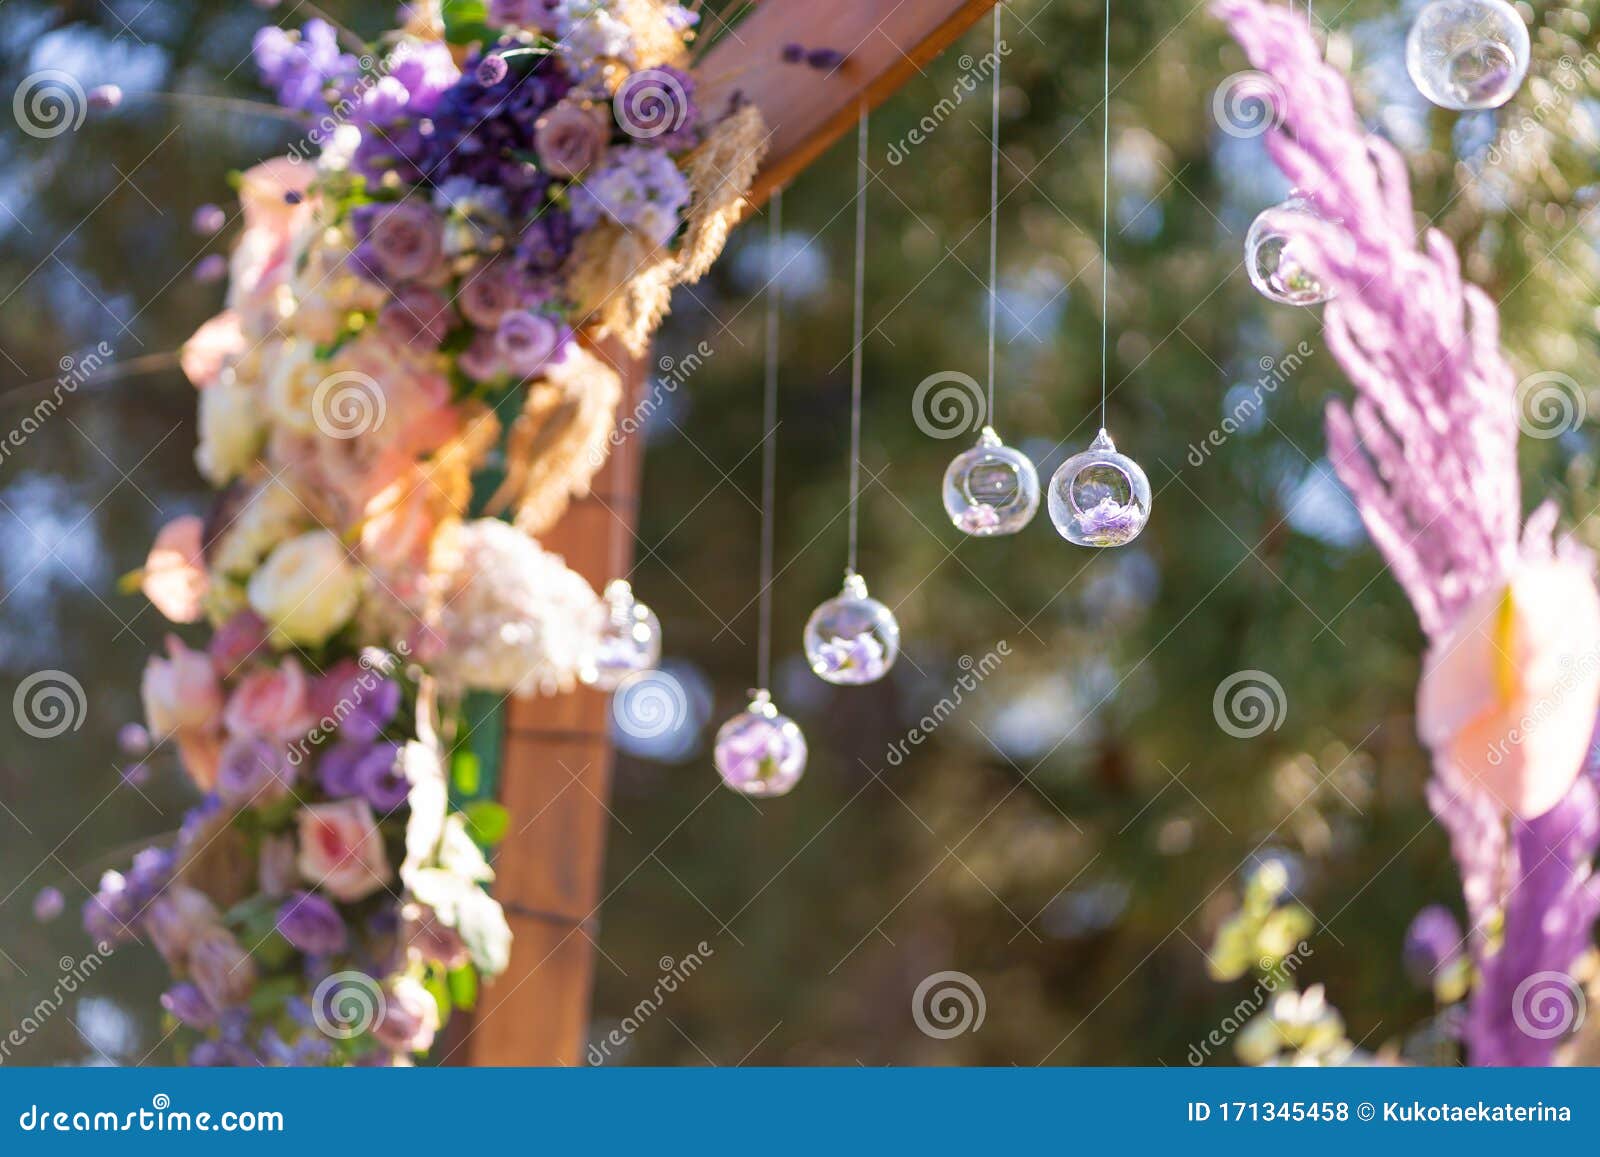 Decoración De Primer Nivel Con Flores Frescas De Arco De Bodas Decorado Con Flores Y Bolas De Colgantes Foto de archivo - Imagen de afuera, flor: